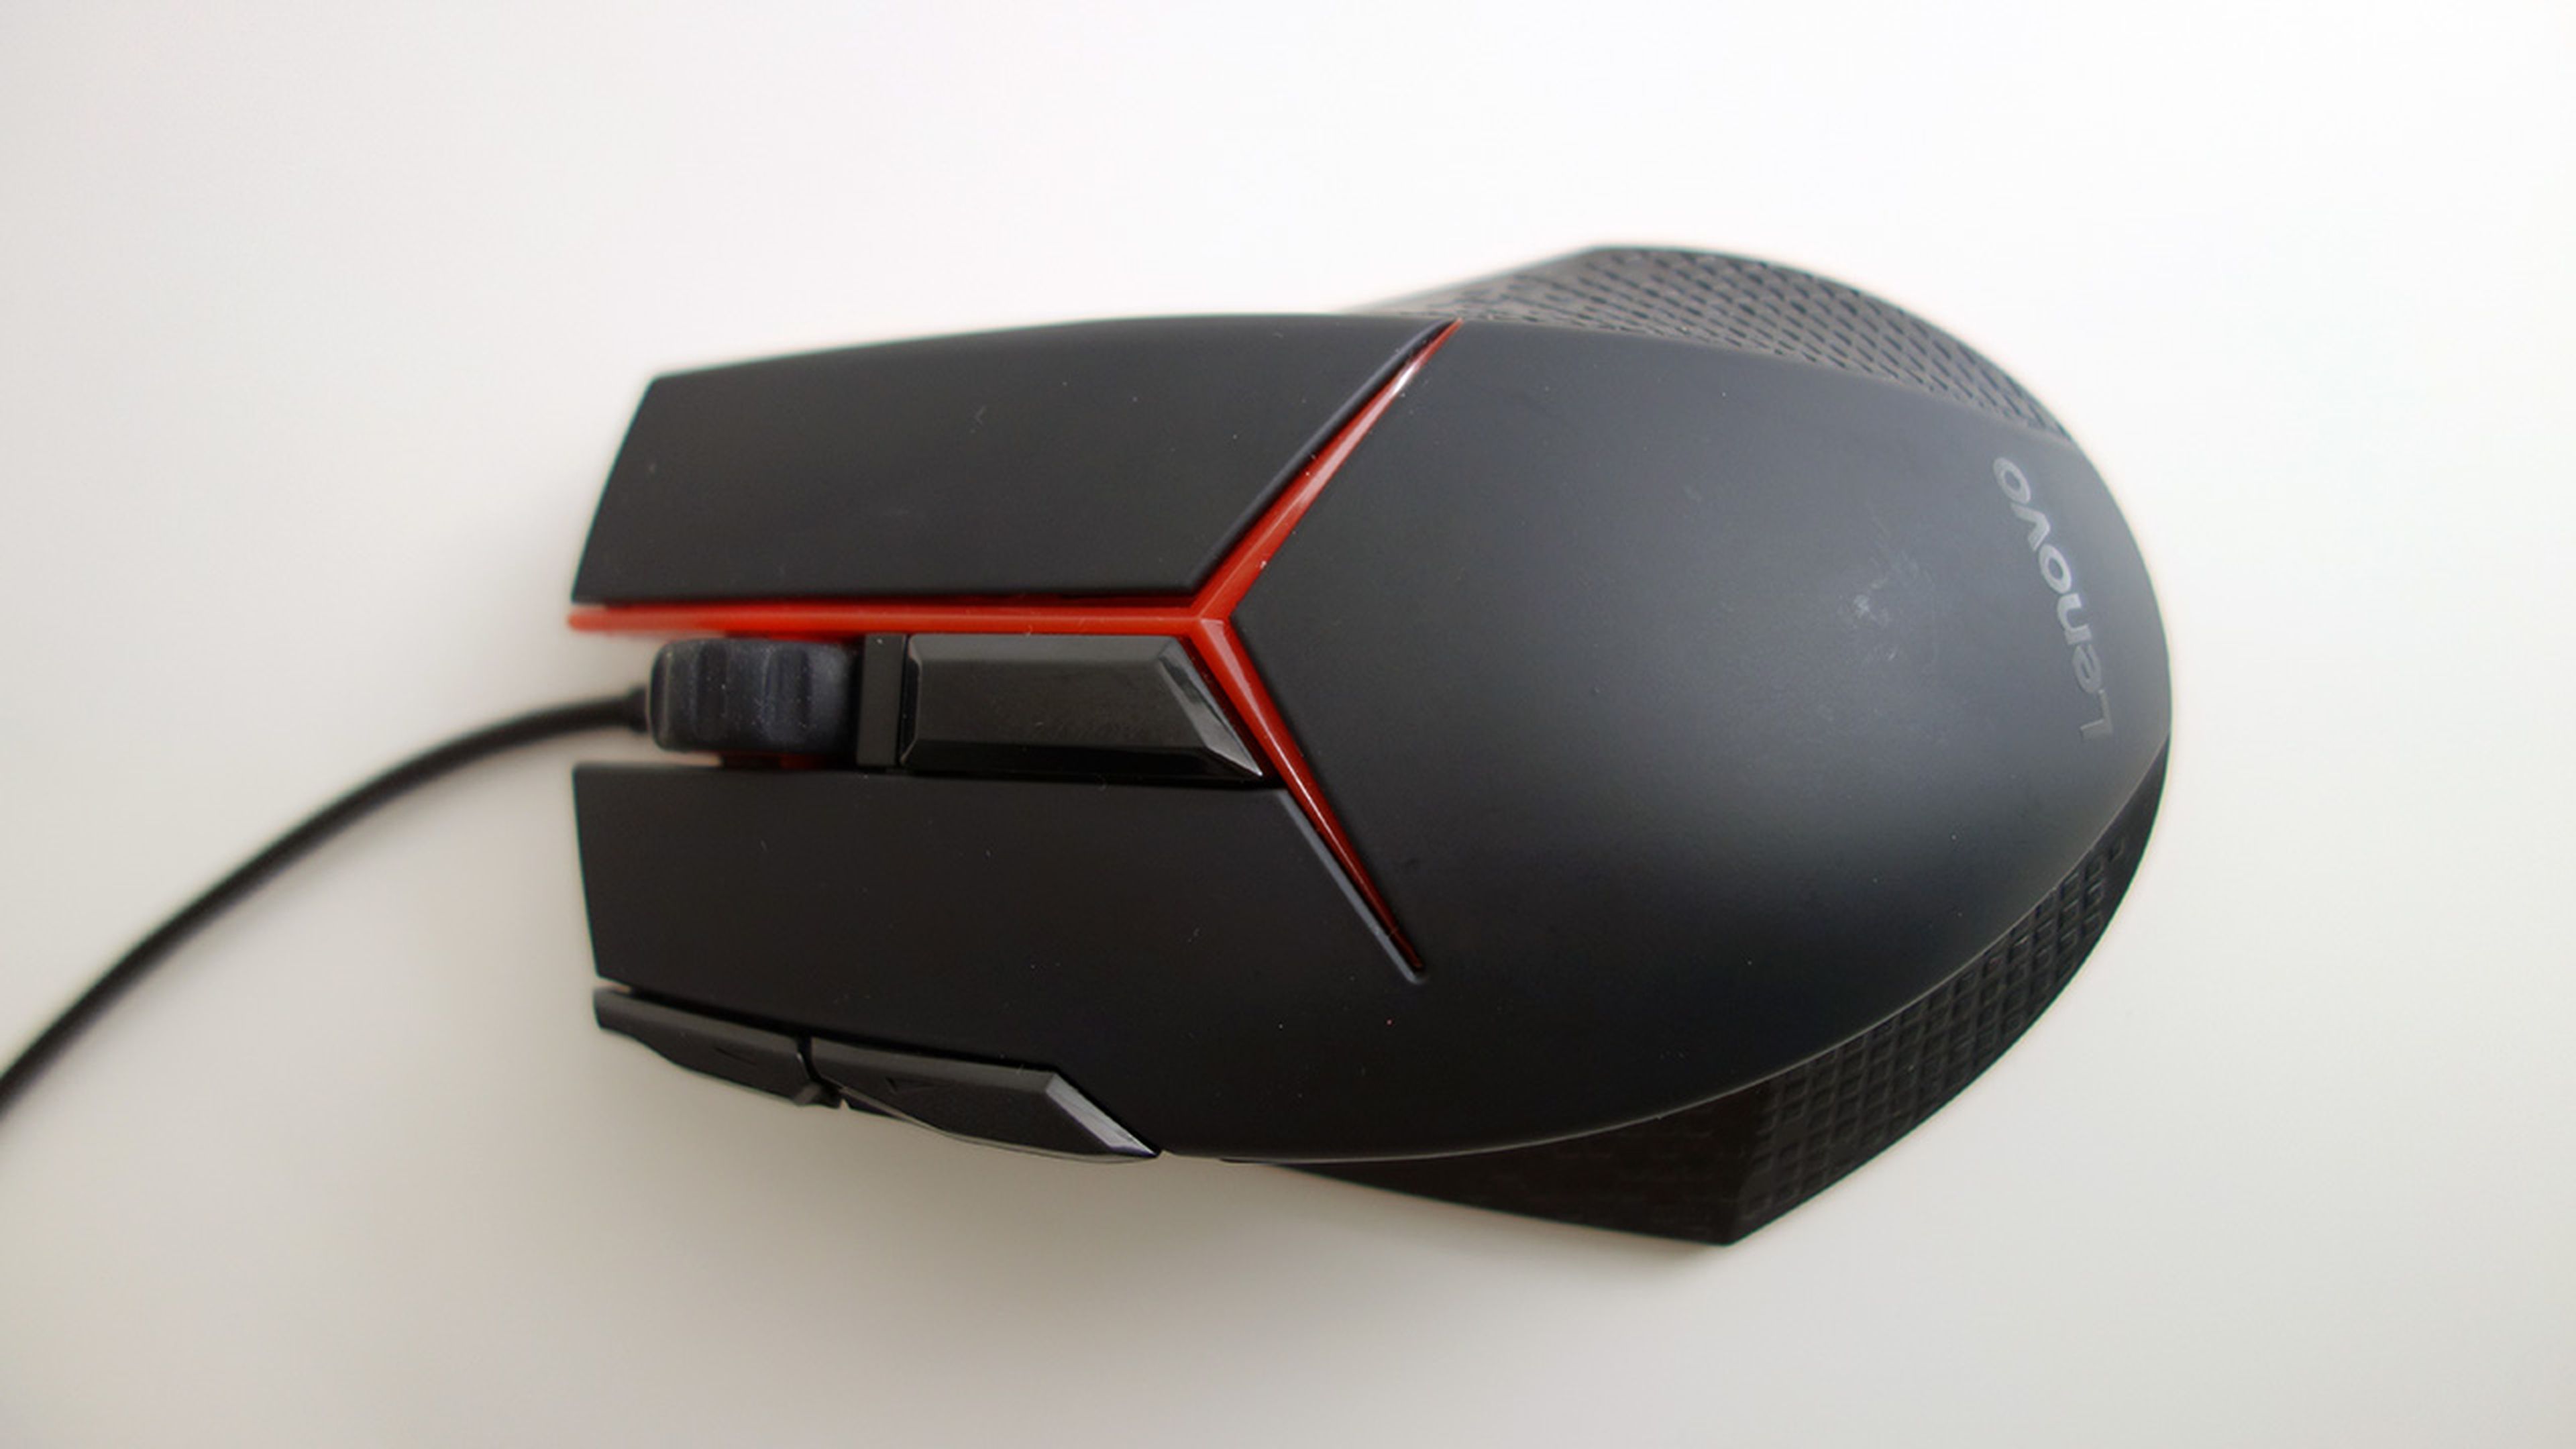 vista superior del Lenovo gaming mouse